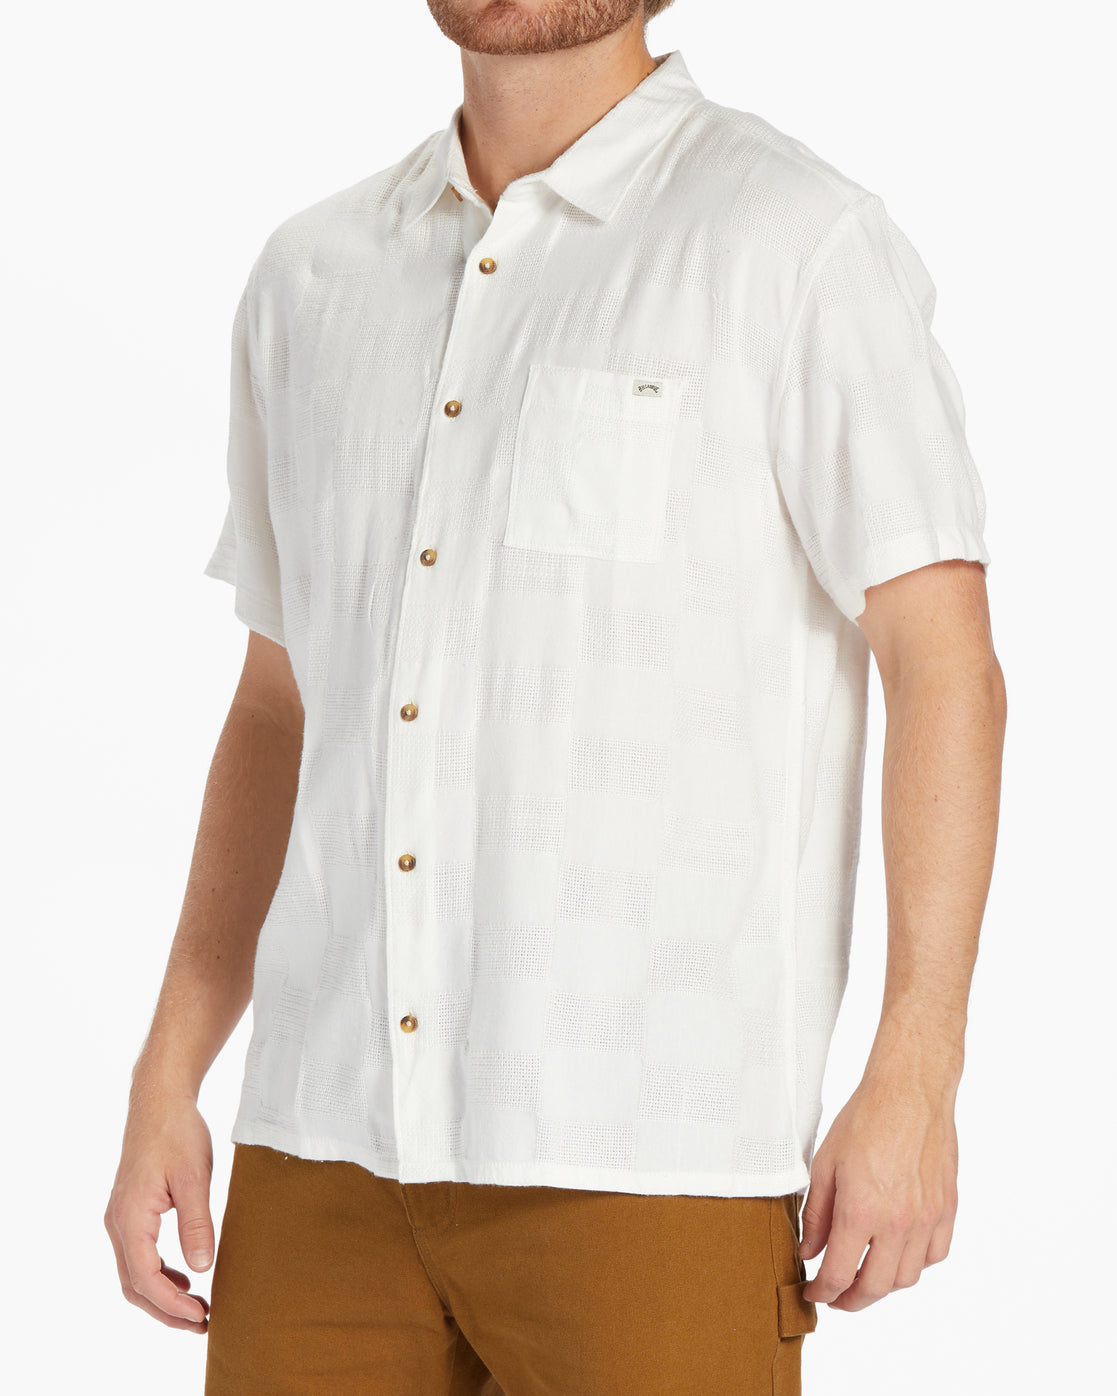 Sundays Jacquard Short Sleeve Shirt - Off White